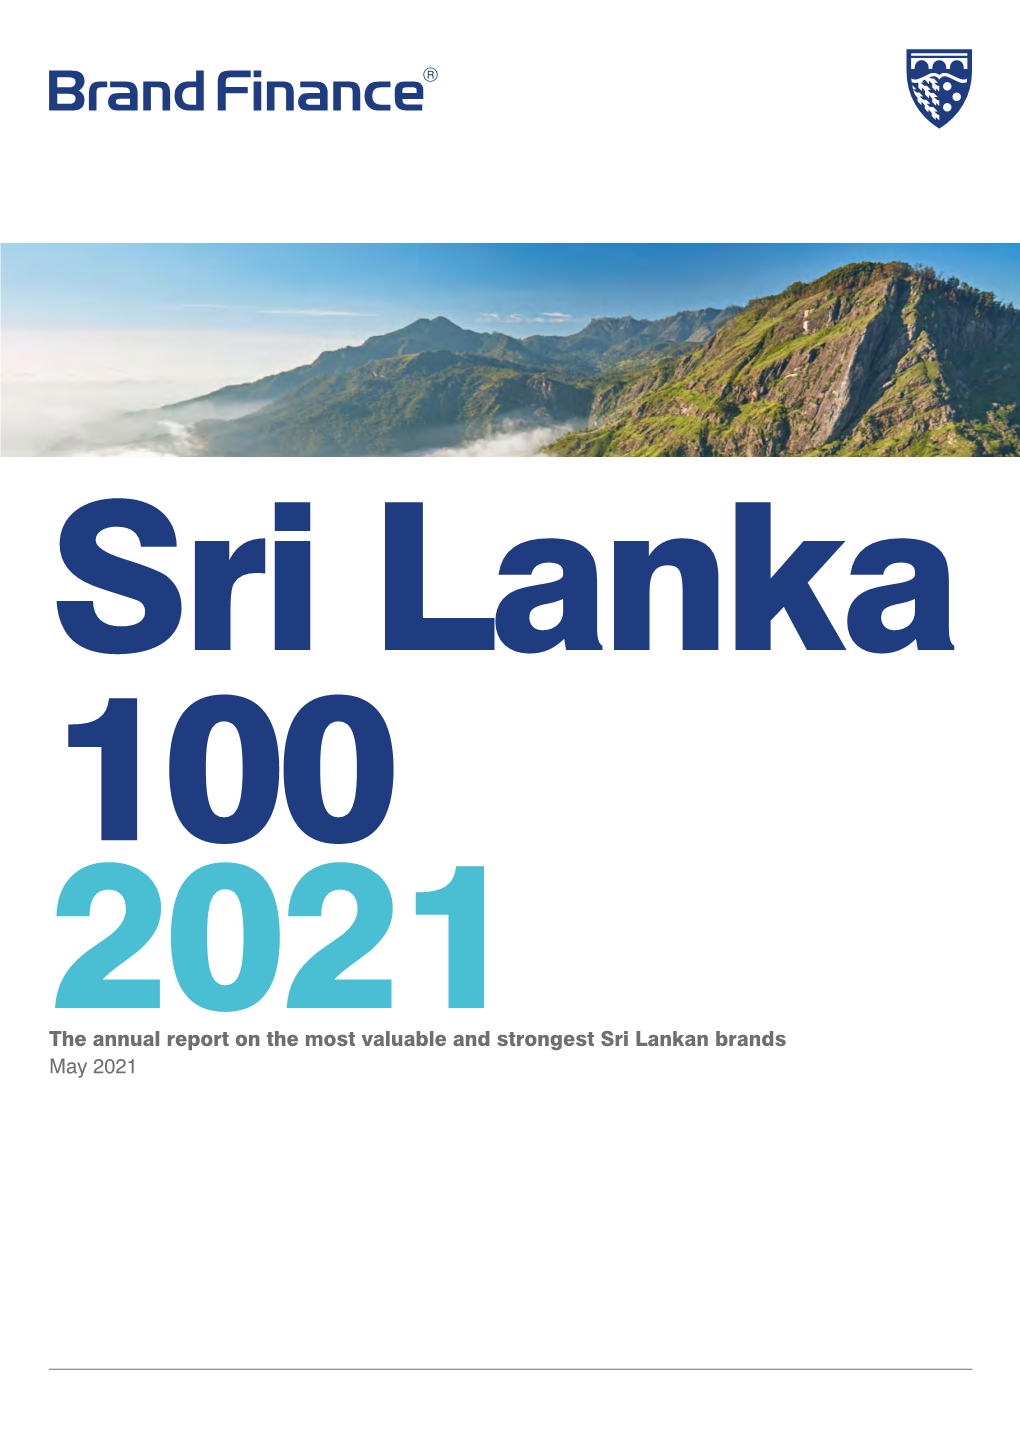 Brand-Finance-Sri-Lanka-100-2021